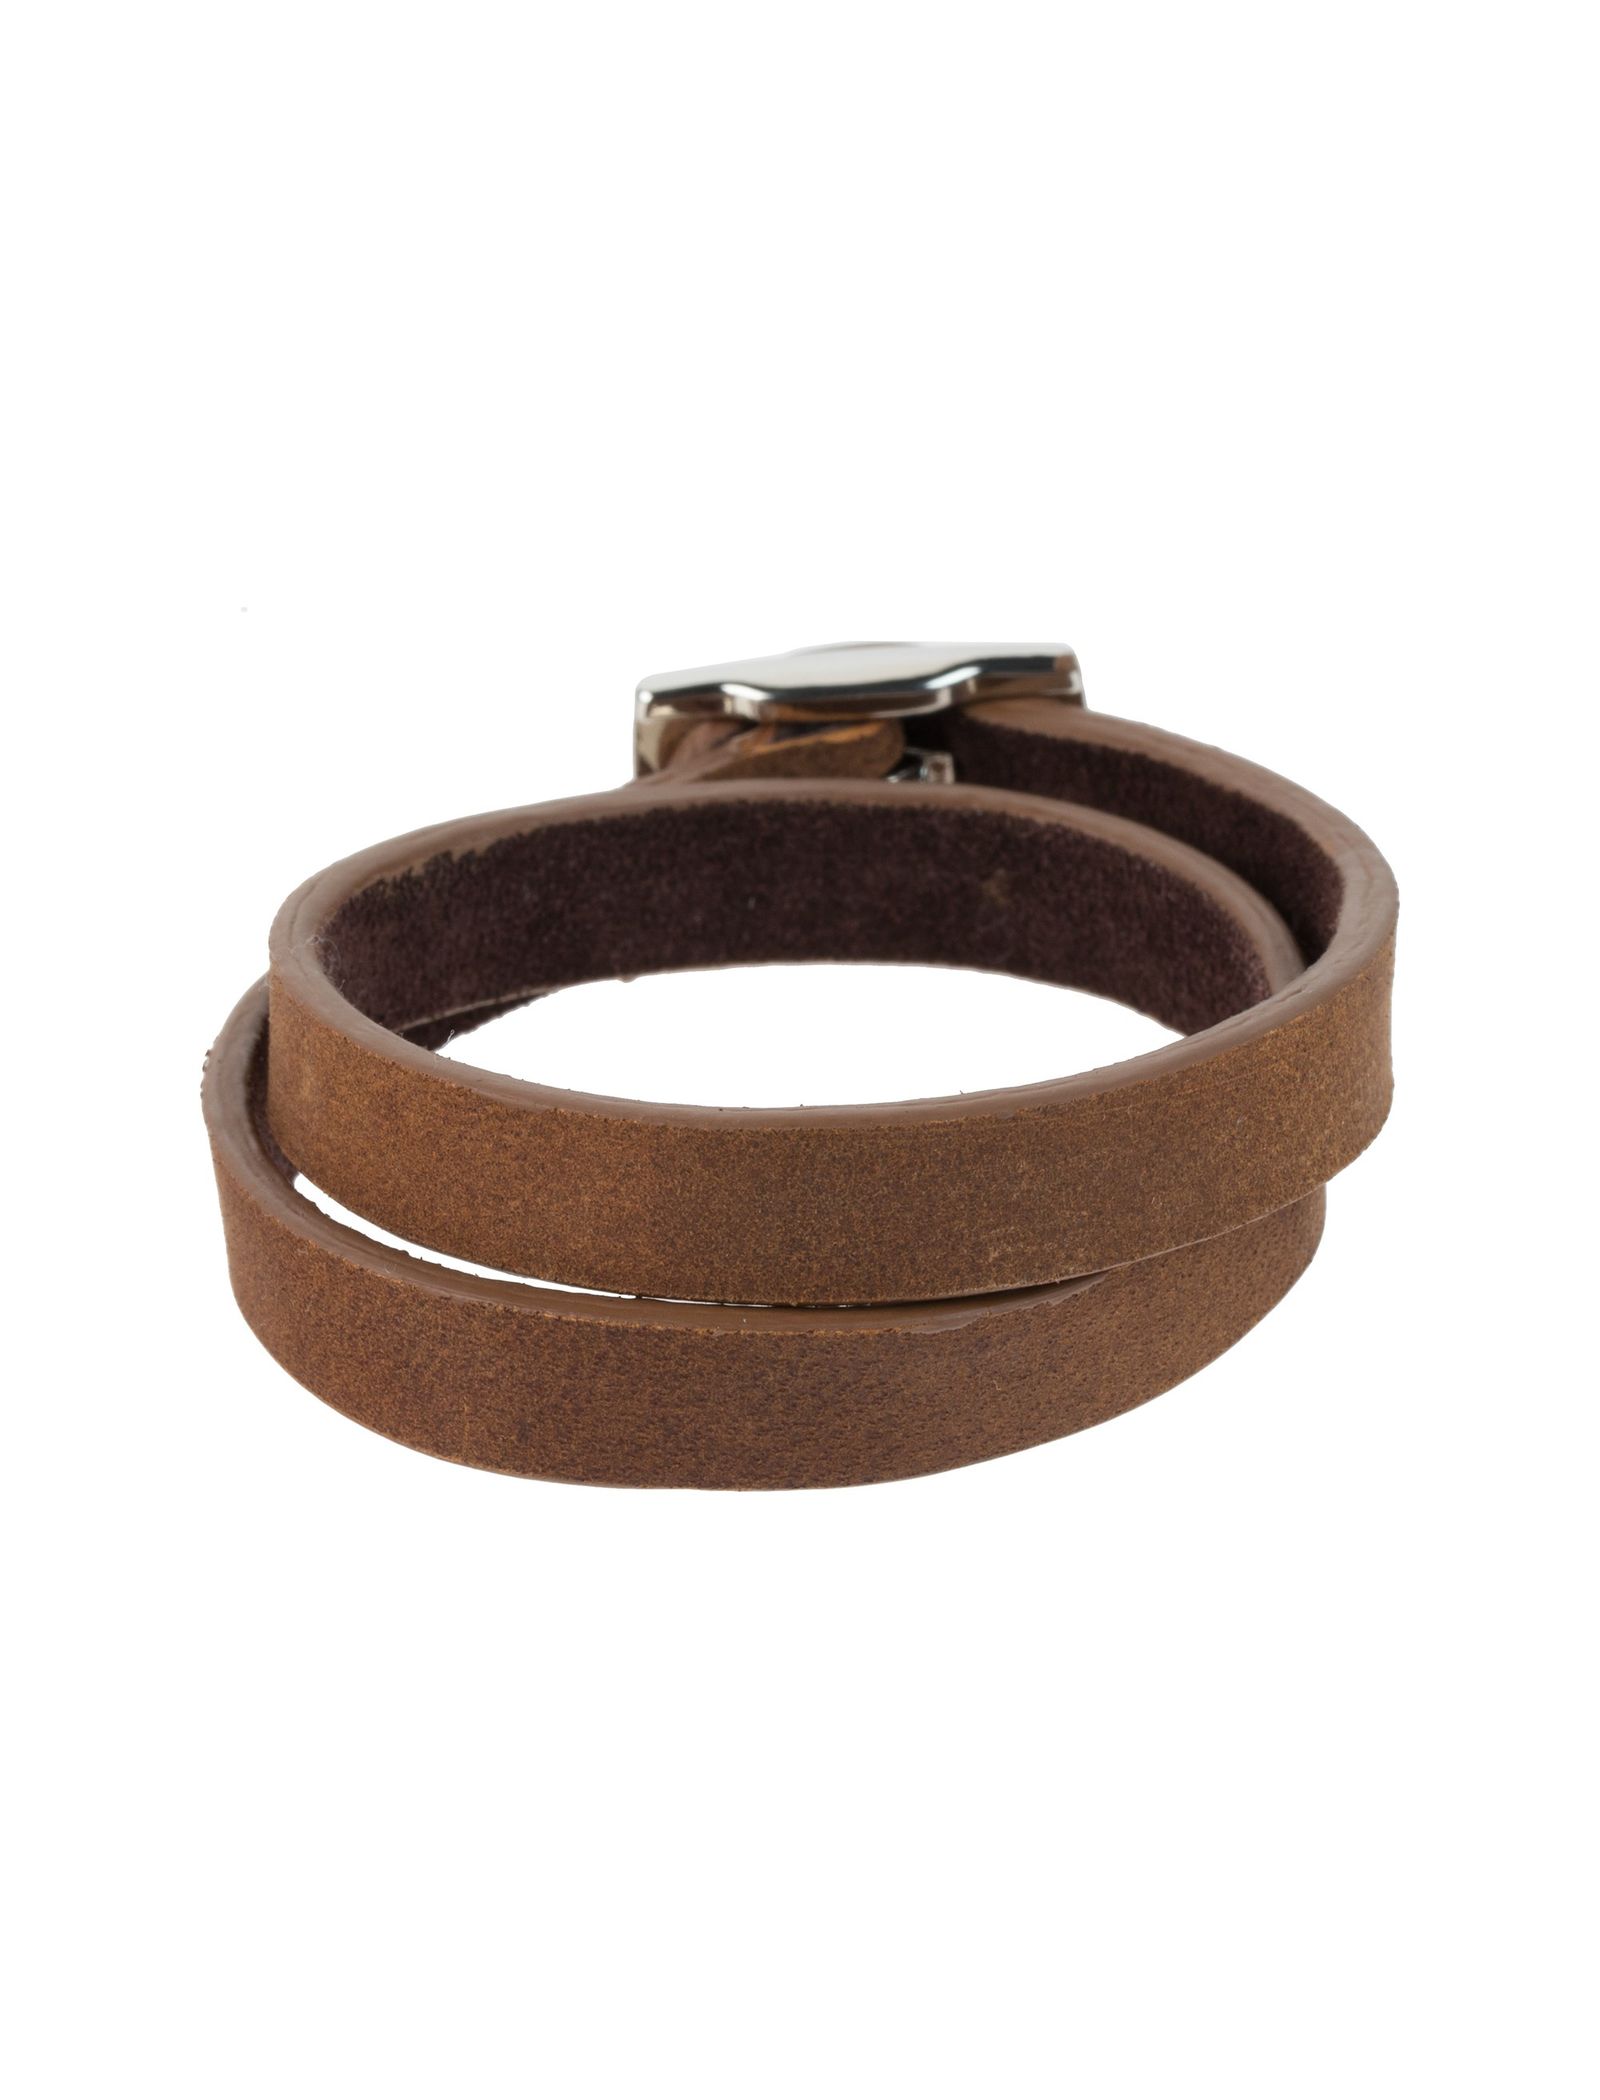 دستبند چرم مردانه - ماکو دیزاین سایز 42 cm - قهوه اي روشن - 1